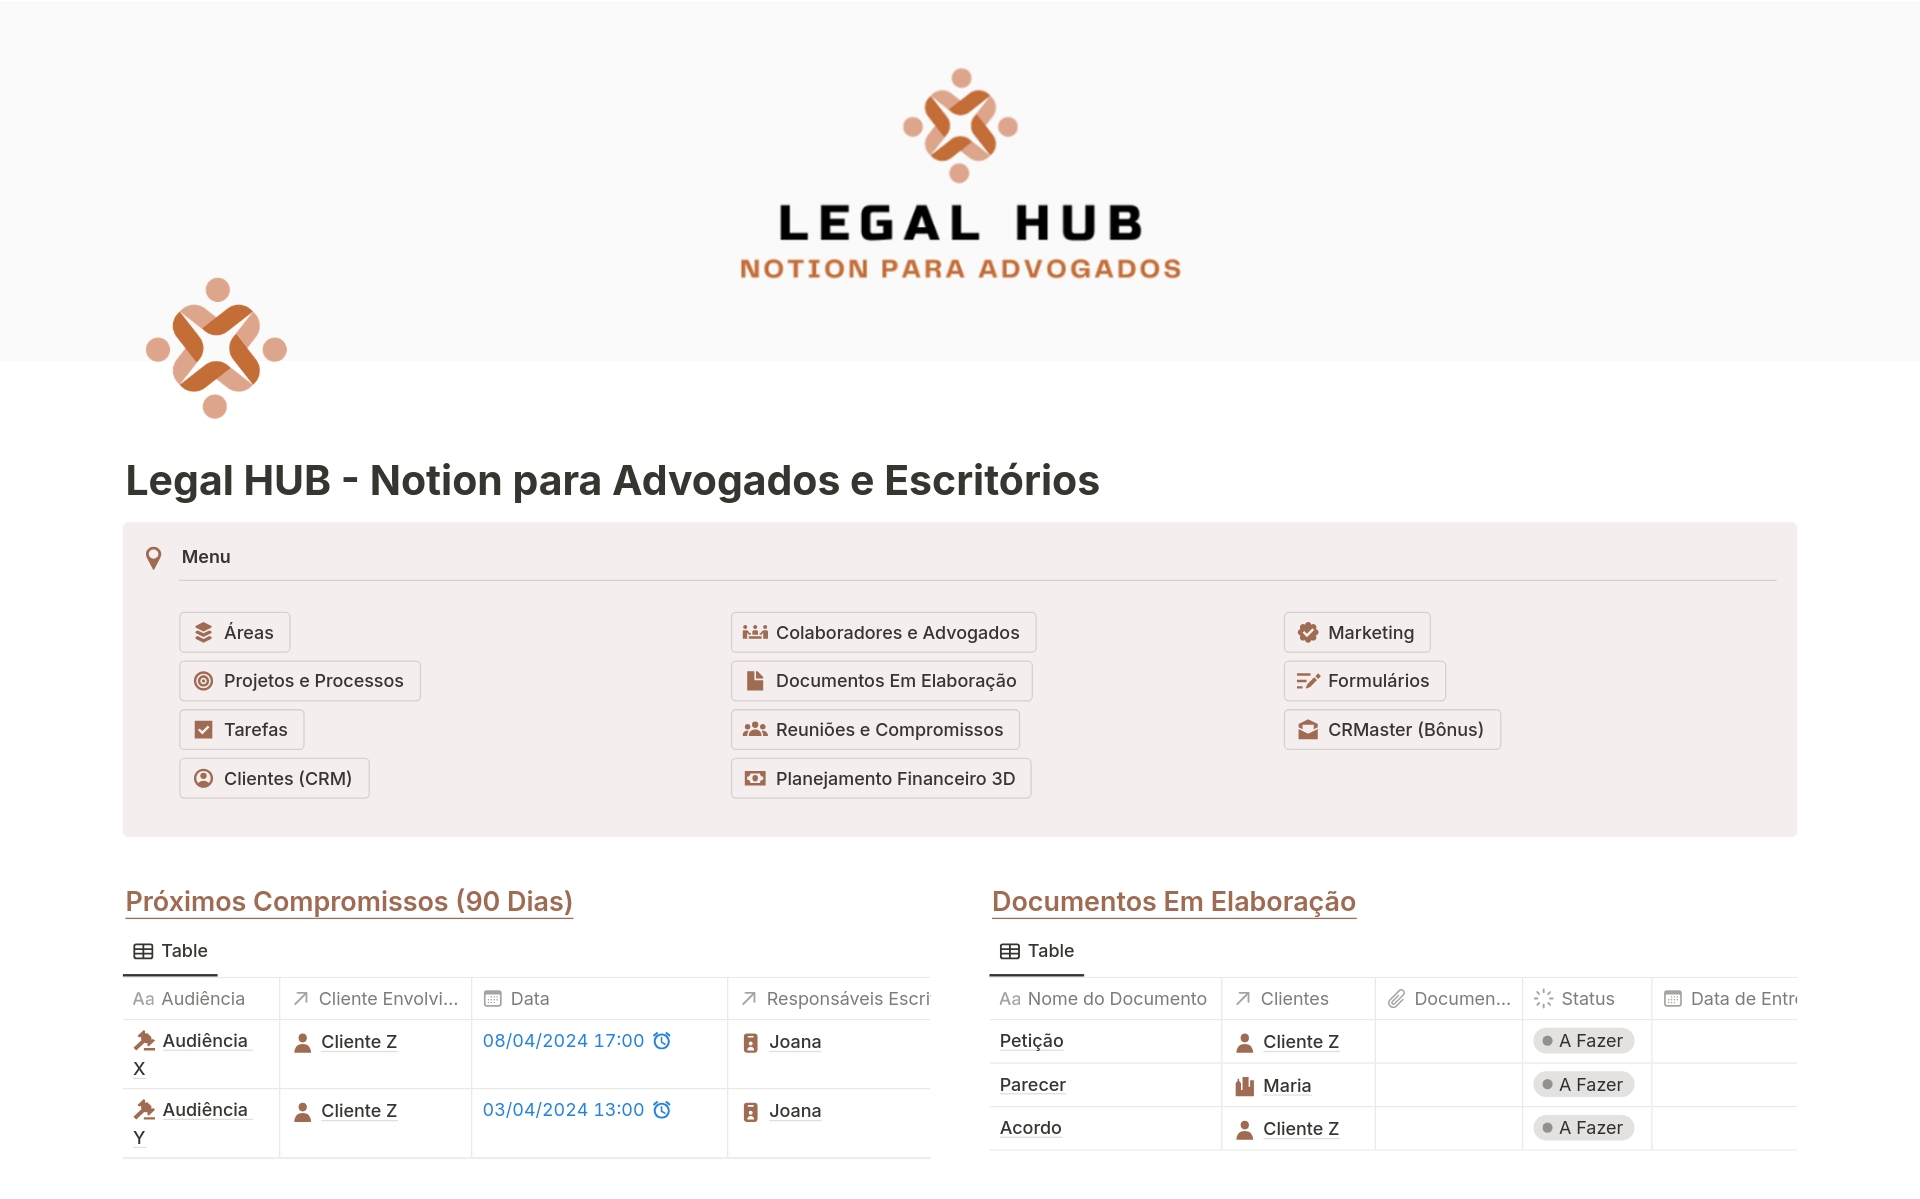 Aperçu du modèle de Legal HUB - Para Advogados e Escritórios